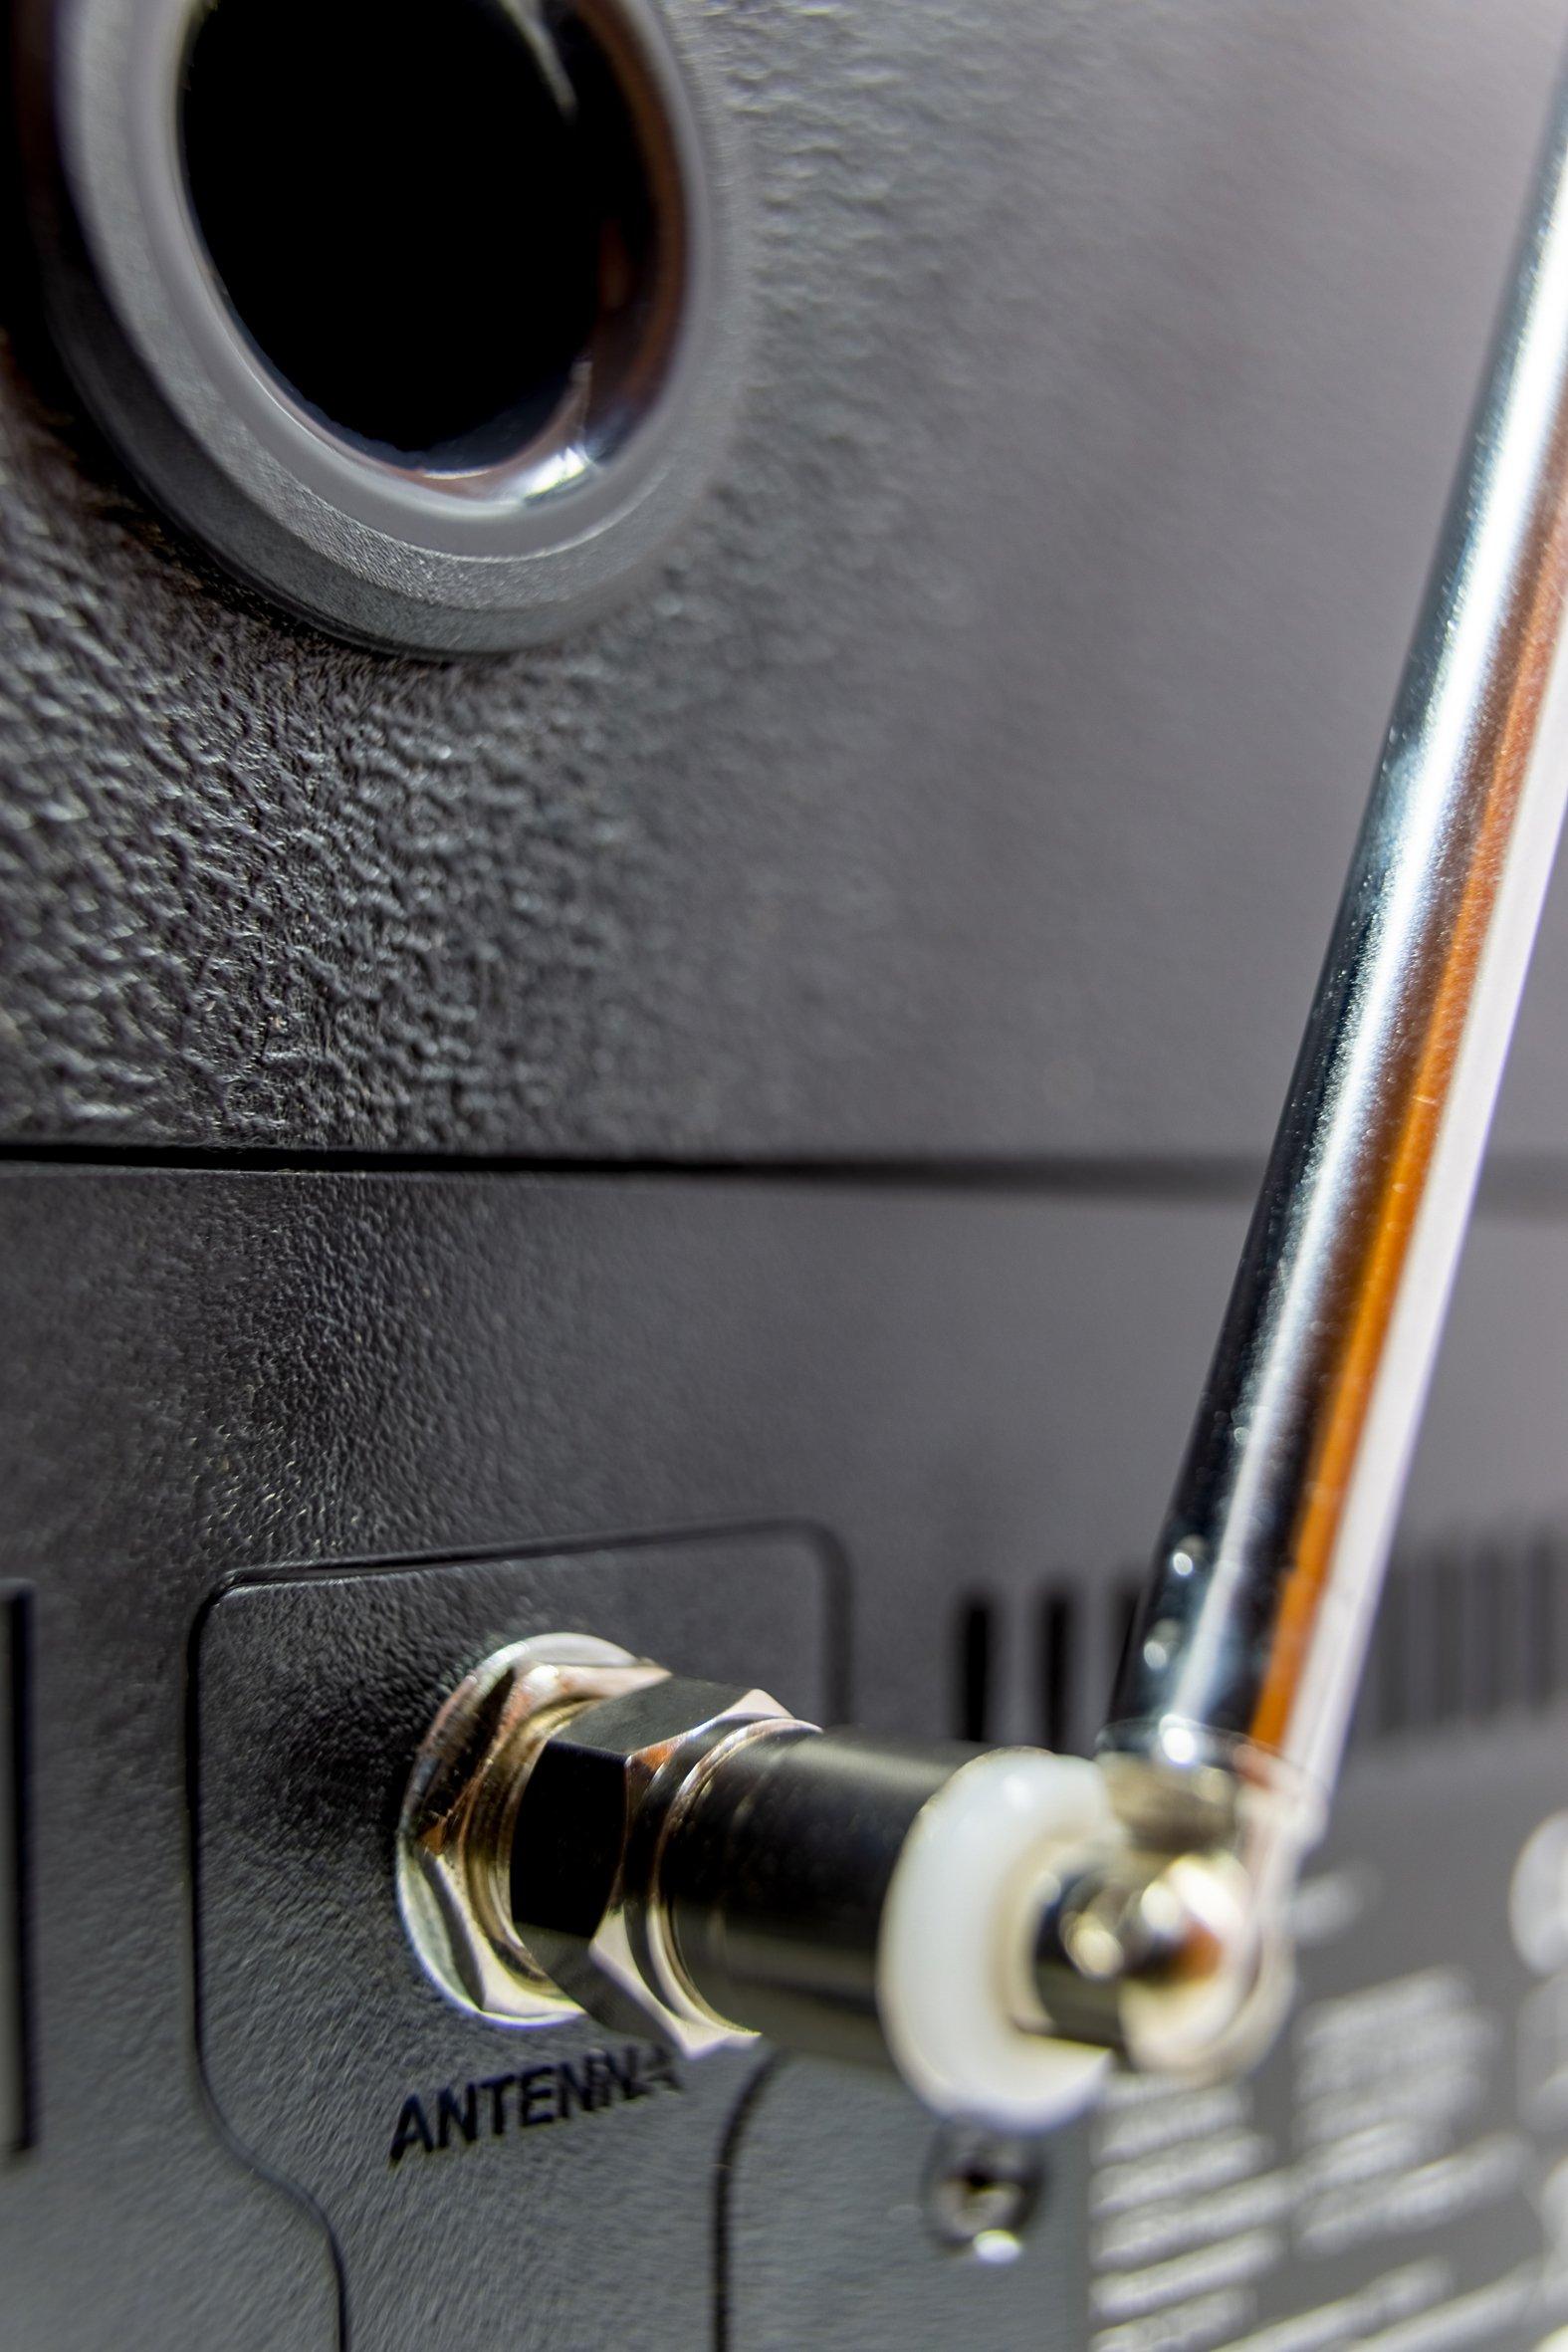 soundmaster  Soundmaster DAB970BR1 ensemble audio pour la maison Système mini audio domestique 30 W Or, Bois 